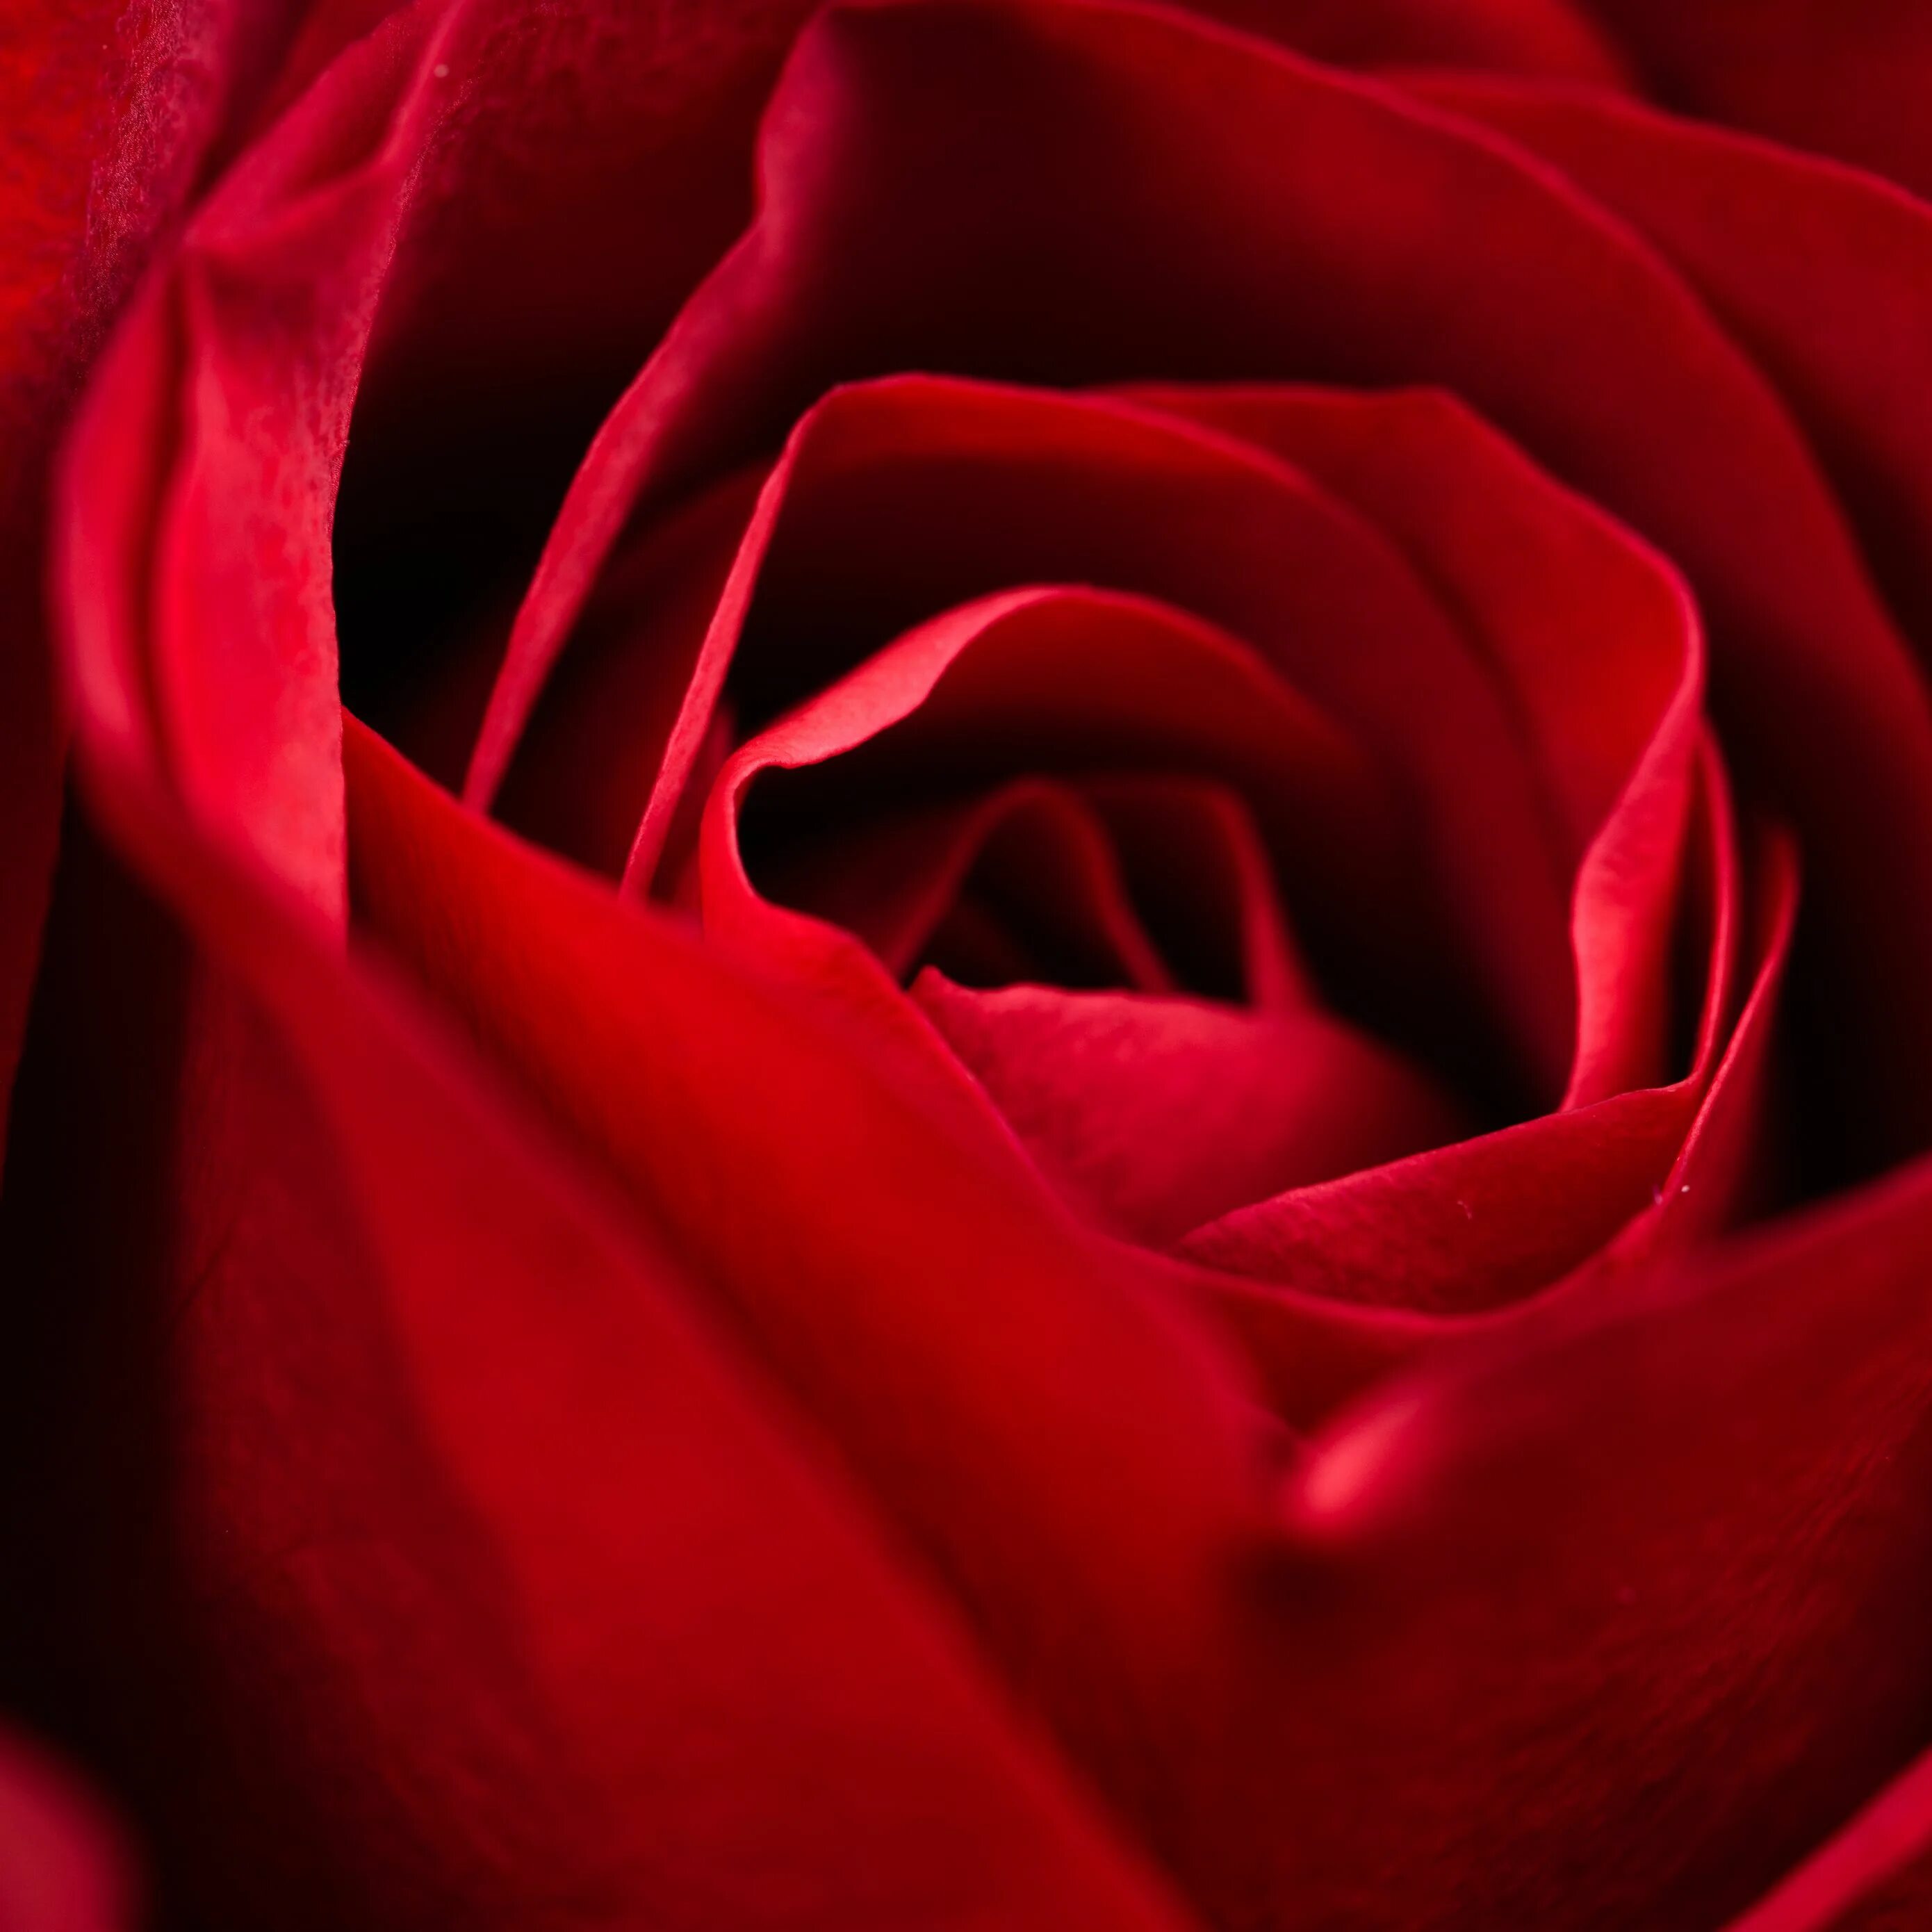 Red close. Красные розы. Красивый красный. Крупные красные розы.